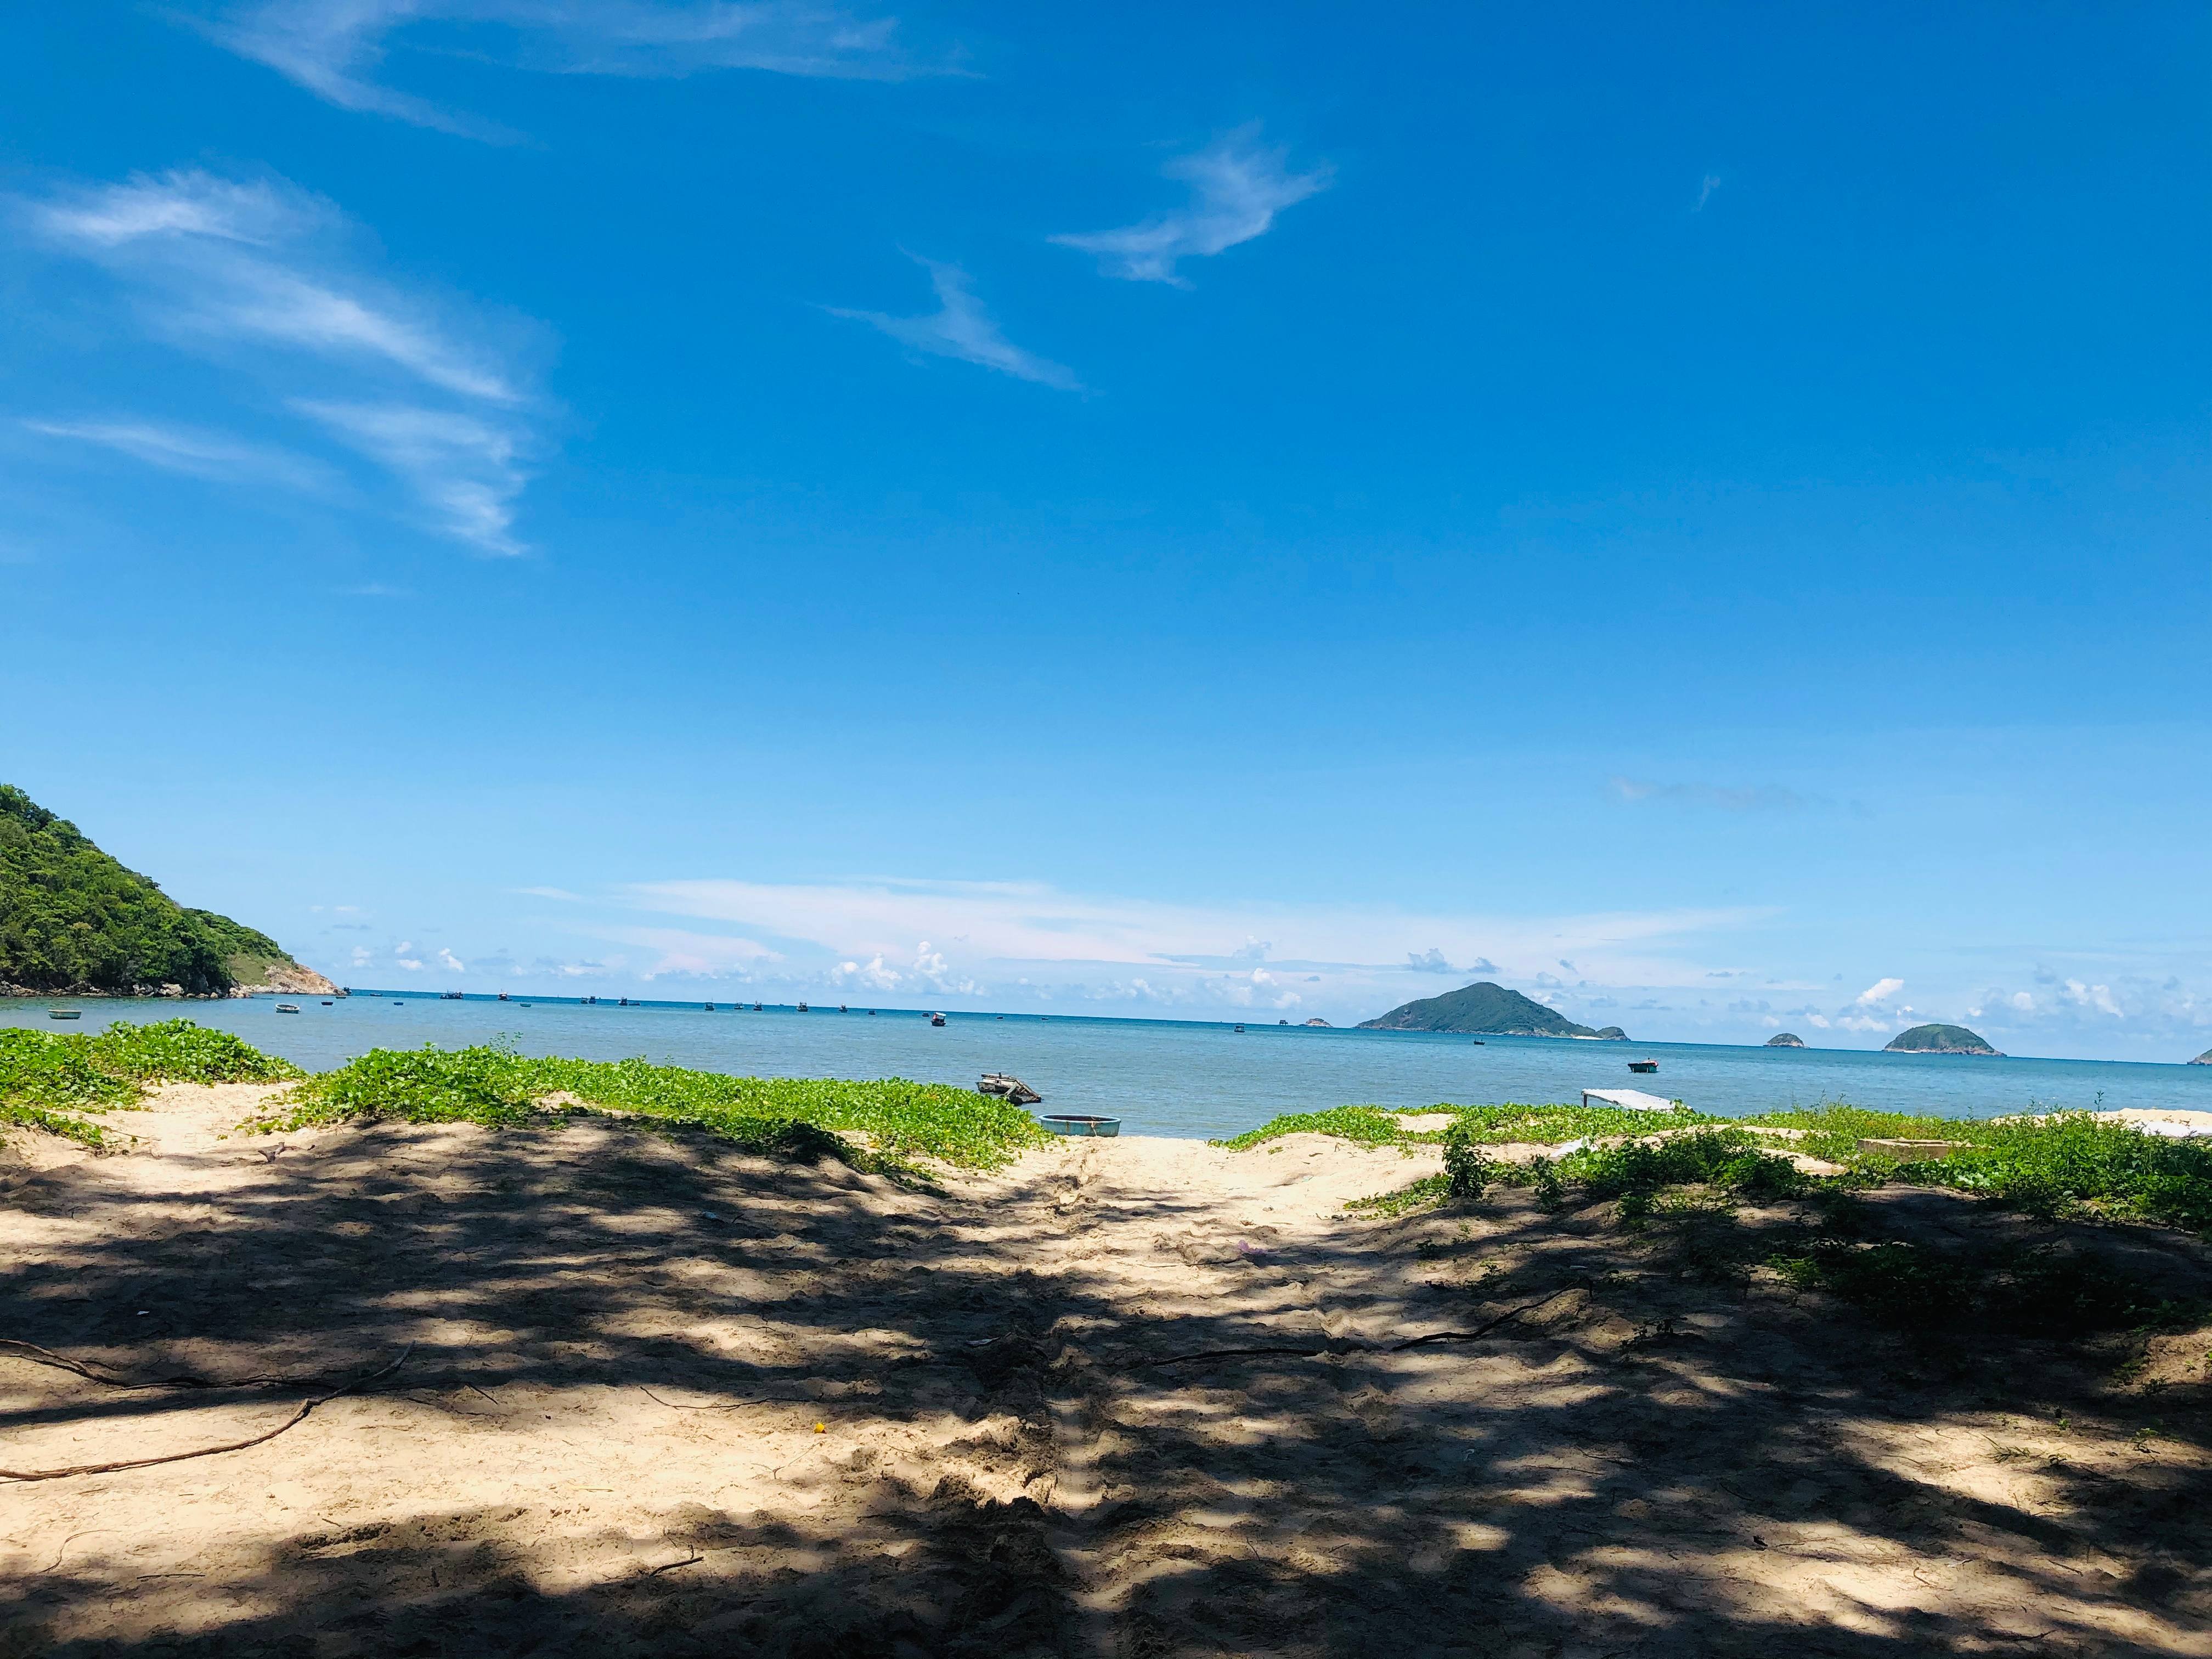 Điểm danh 15 địa điểm siêu đẹp ở Côn Đảo lên hình cực ảo - 17